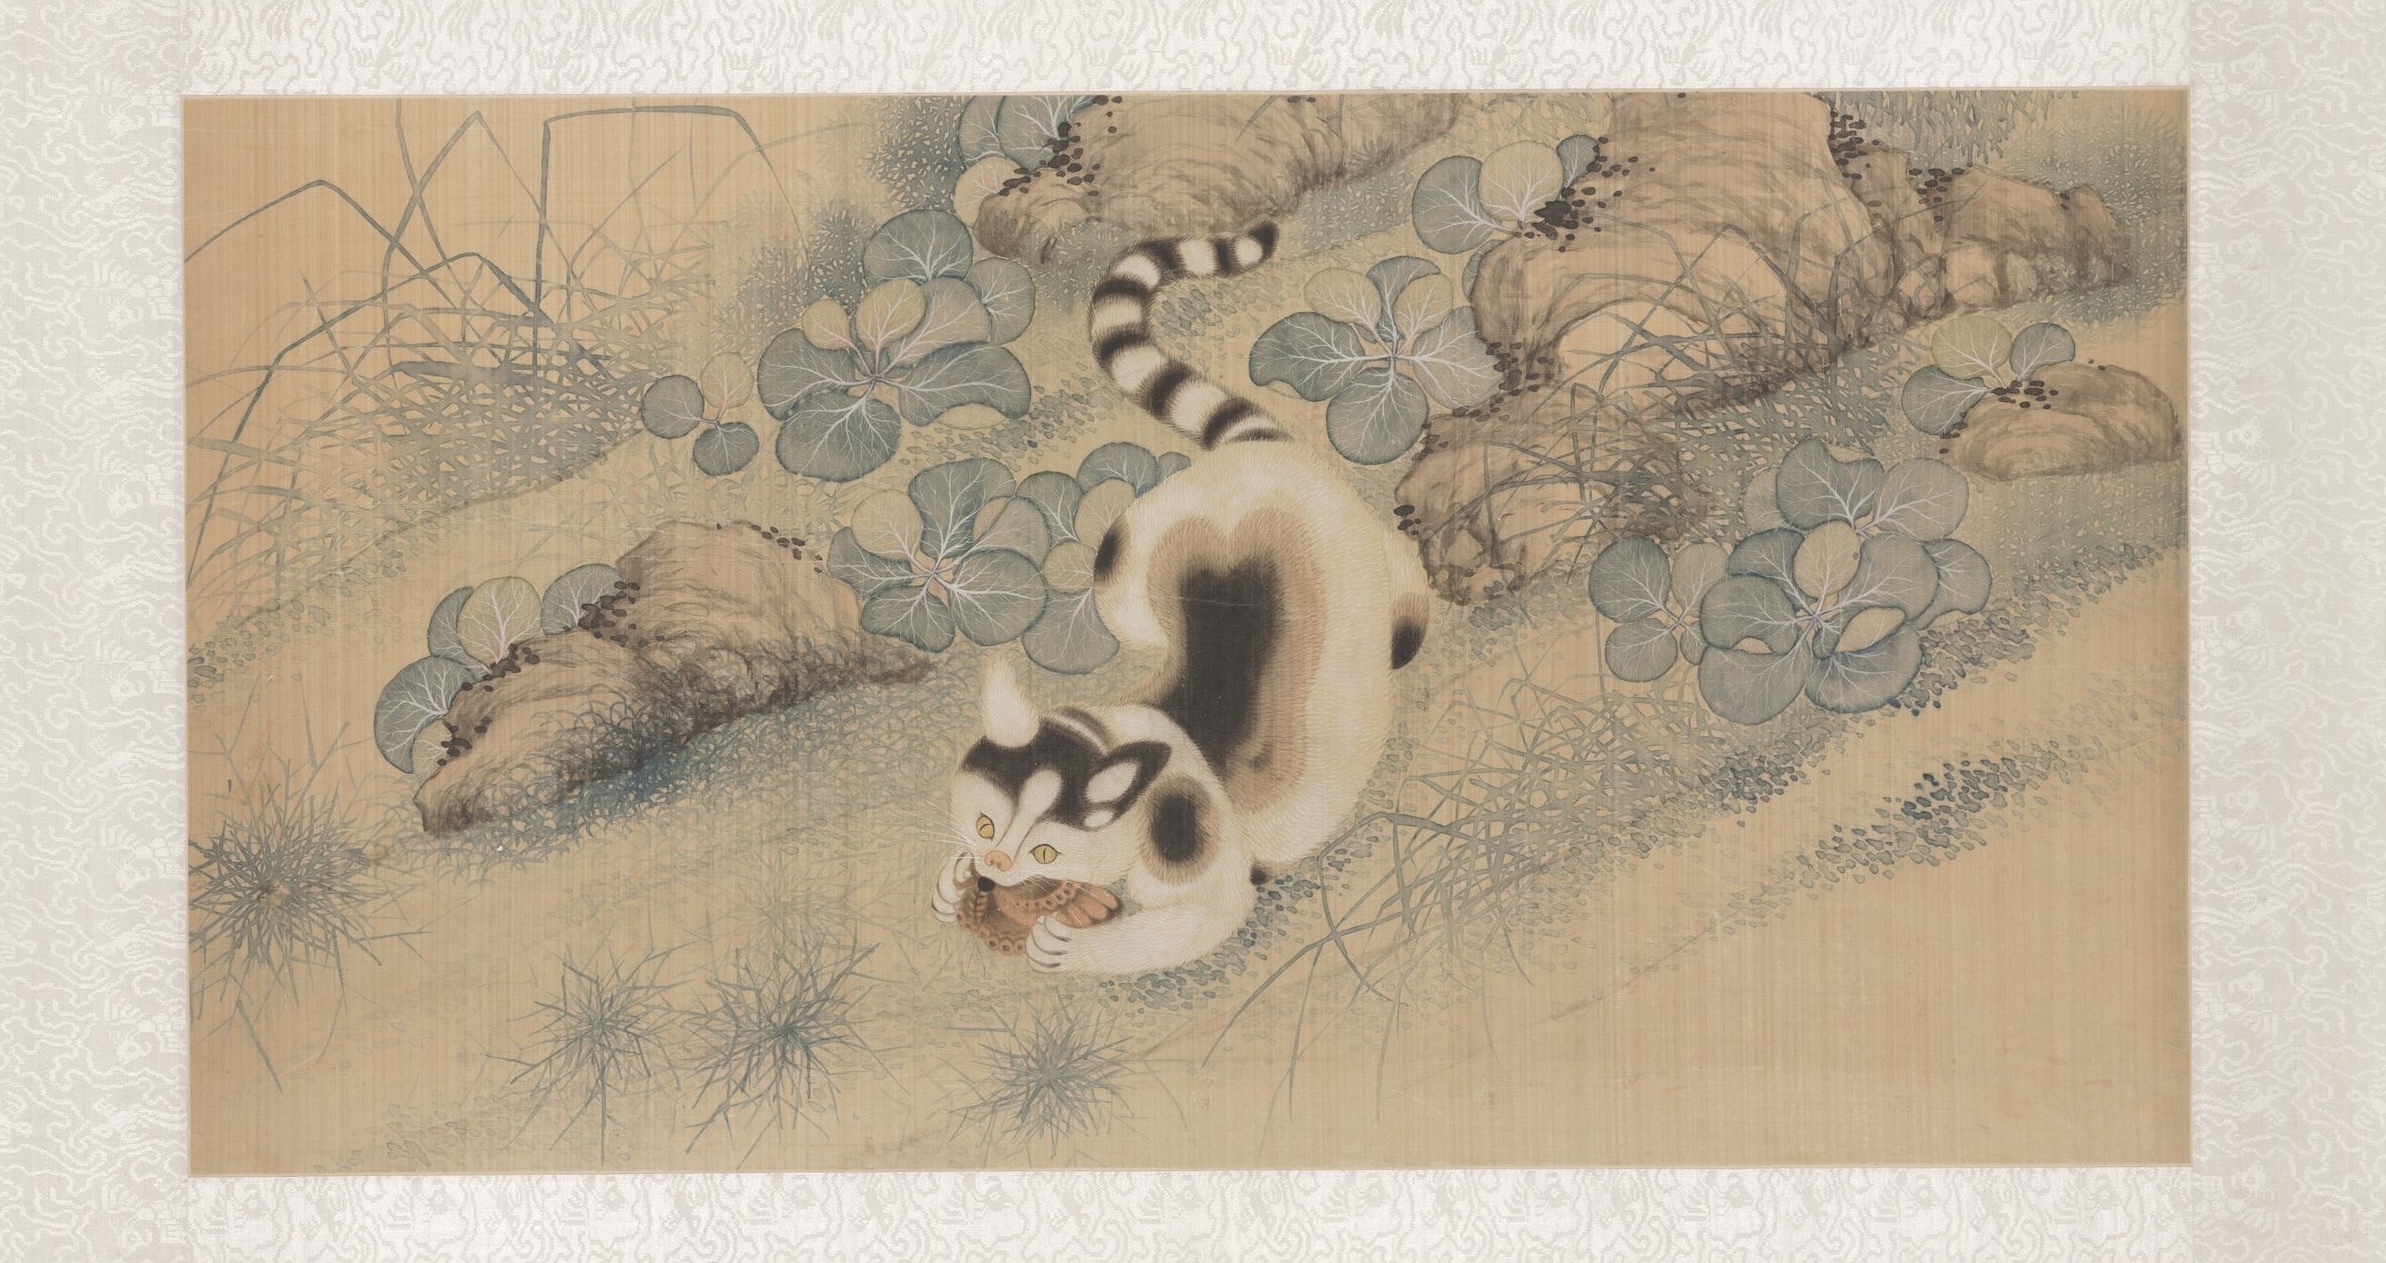 Wiszący zwój z makami, motylami i kotem by Yun Bing - 1683 r. - 46 × 90 × 0,5 cm 